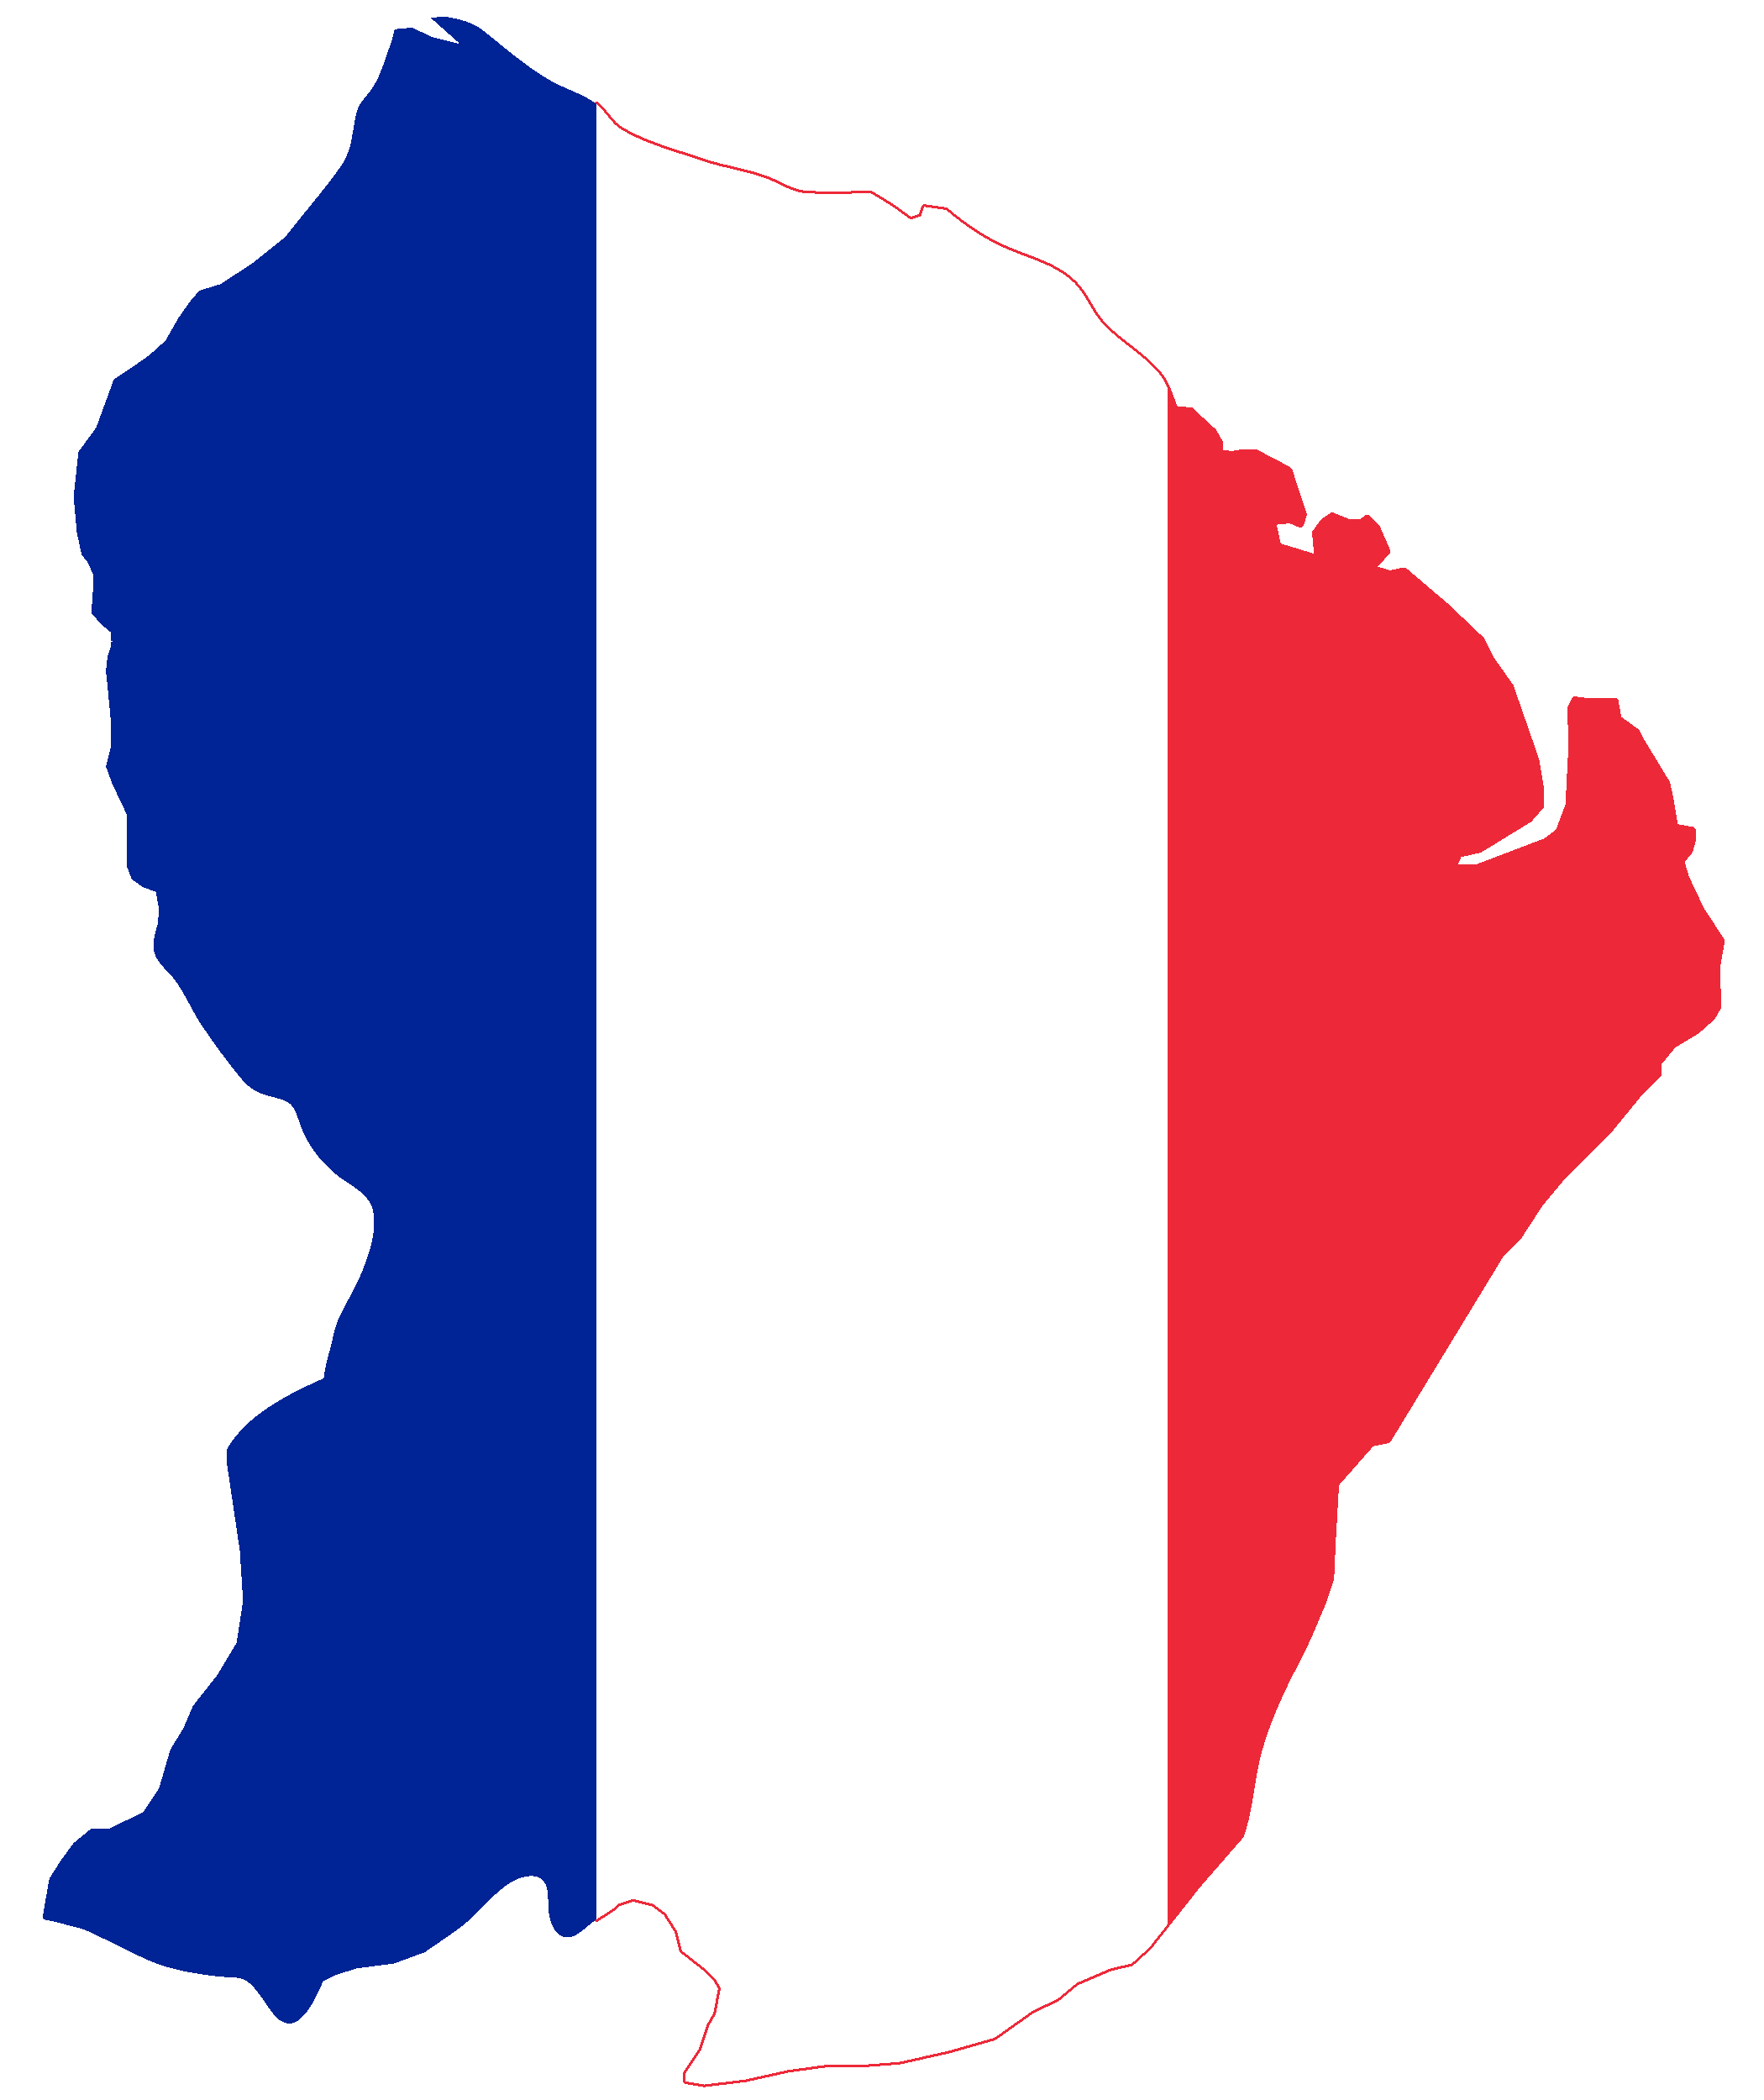 France Région de la carte Transparent PNG